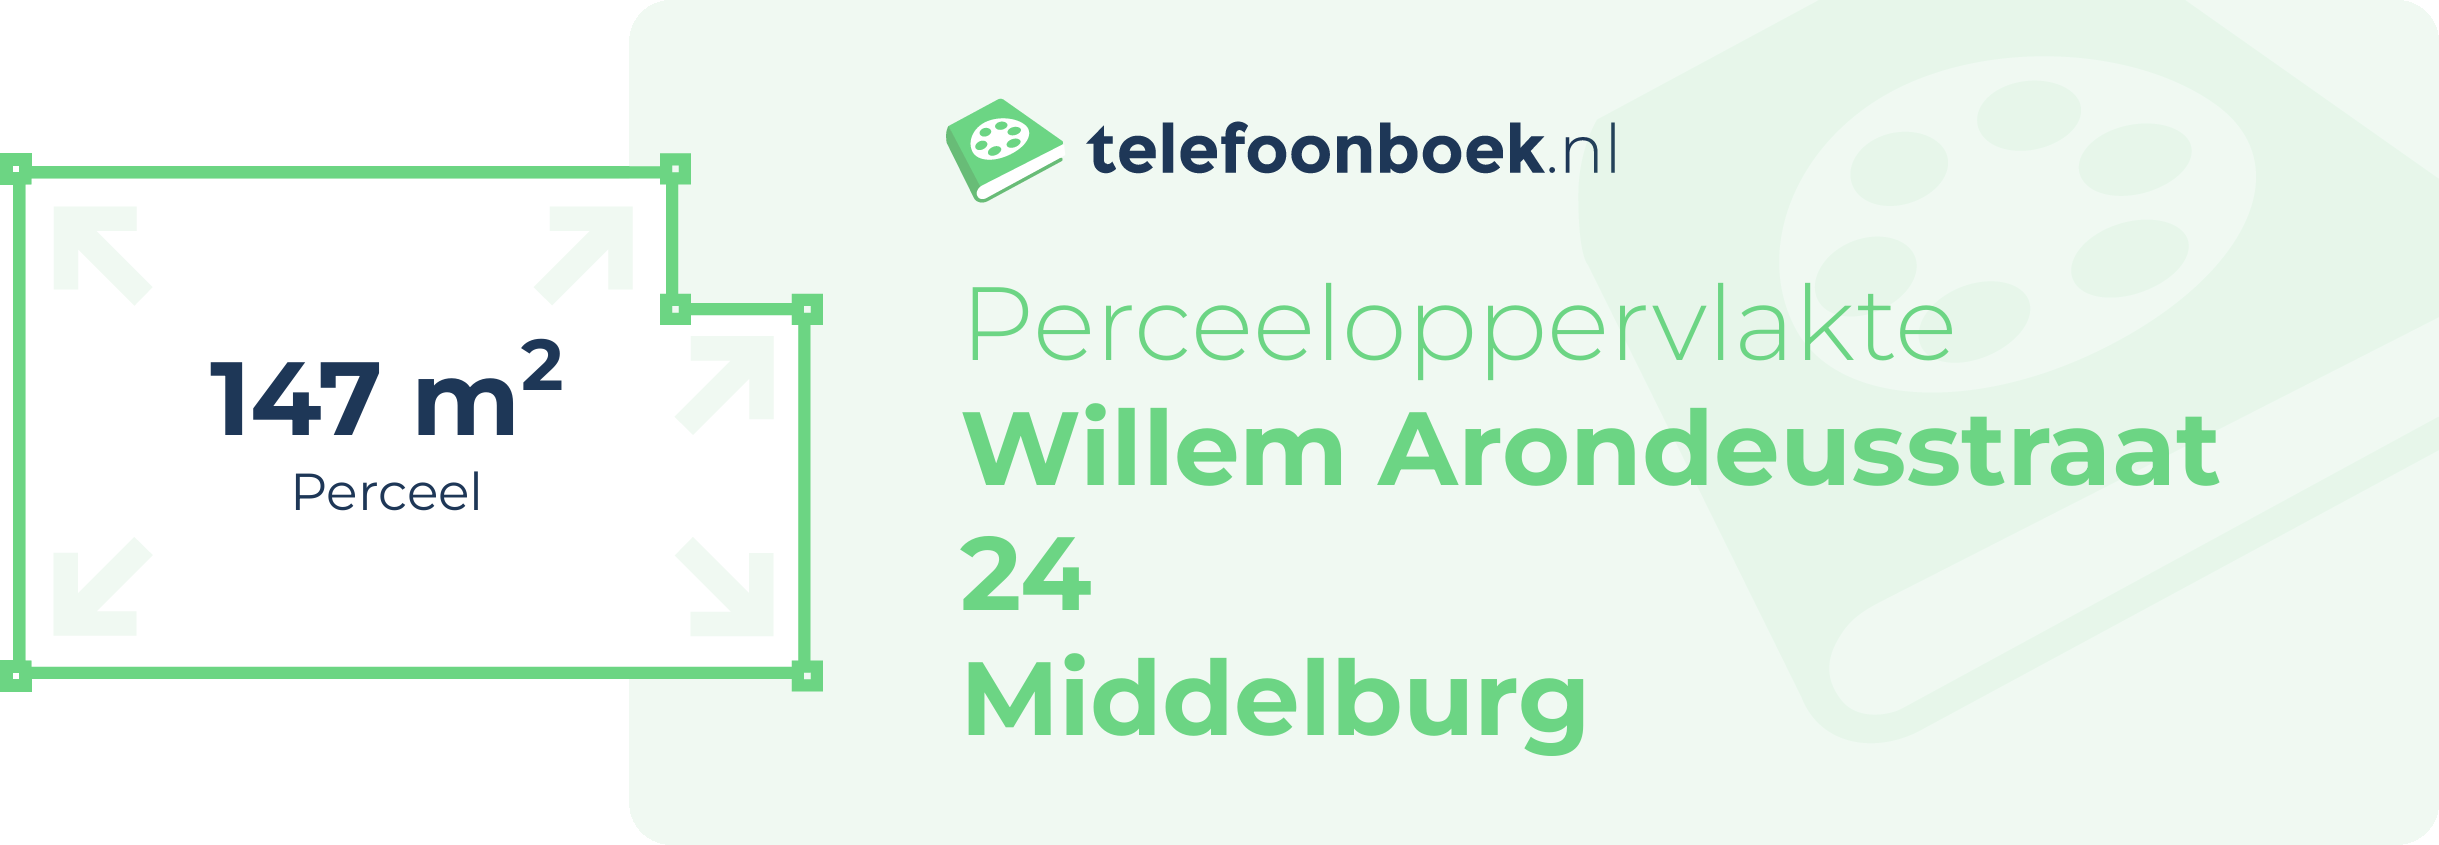 Perceeloppervlakte Willem Arondeusstraat 24 Middelburg